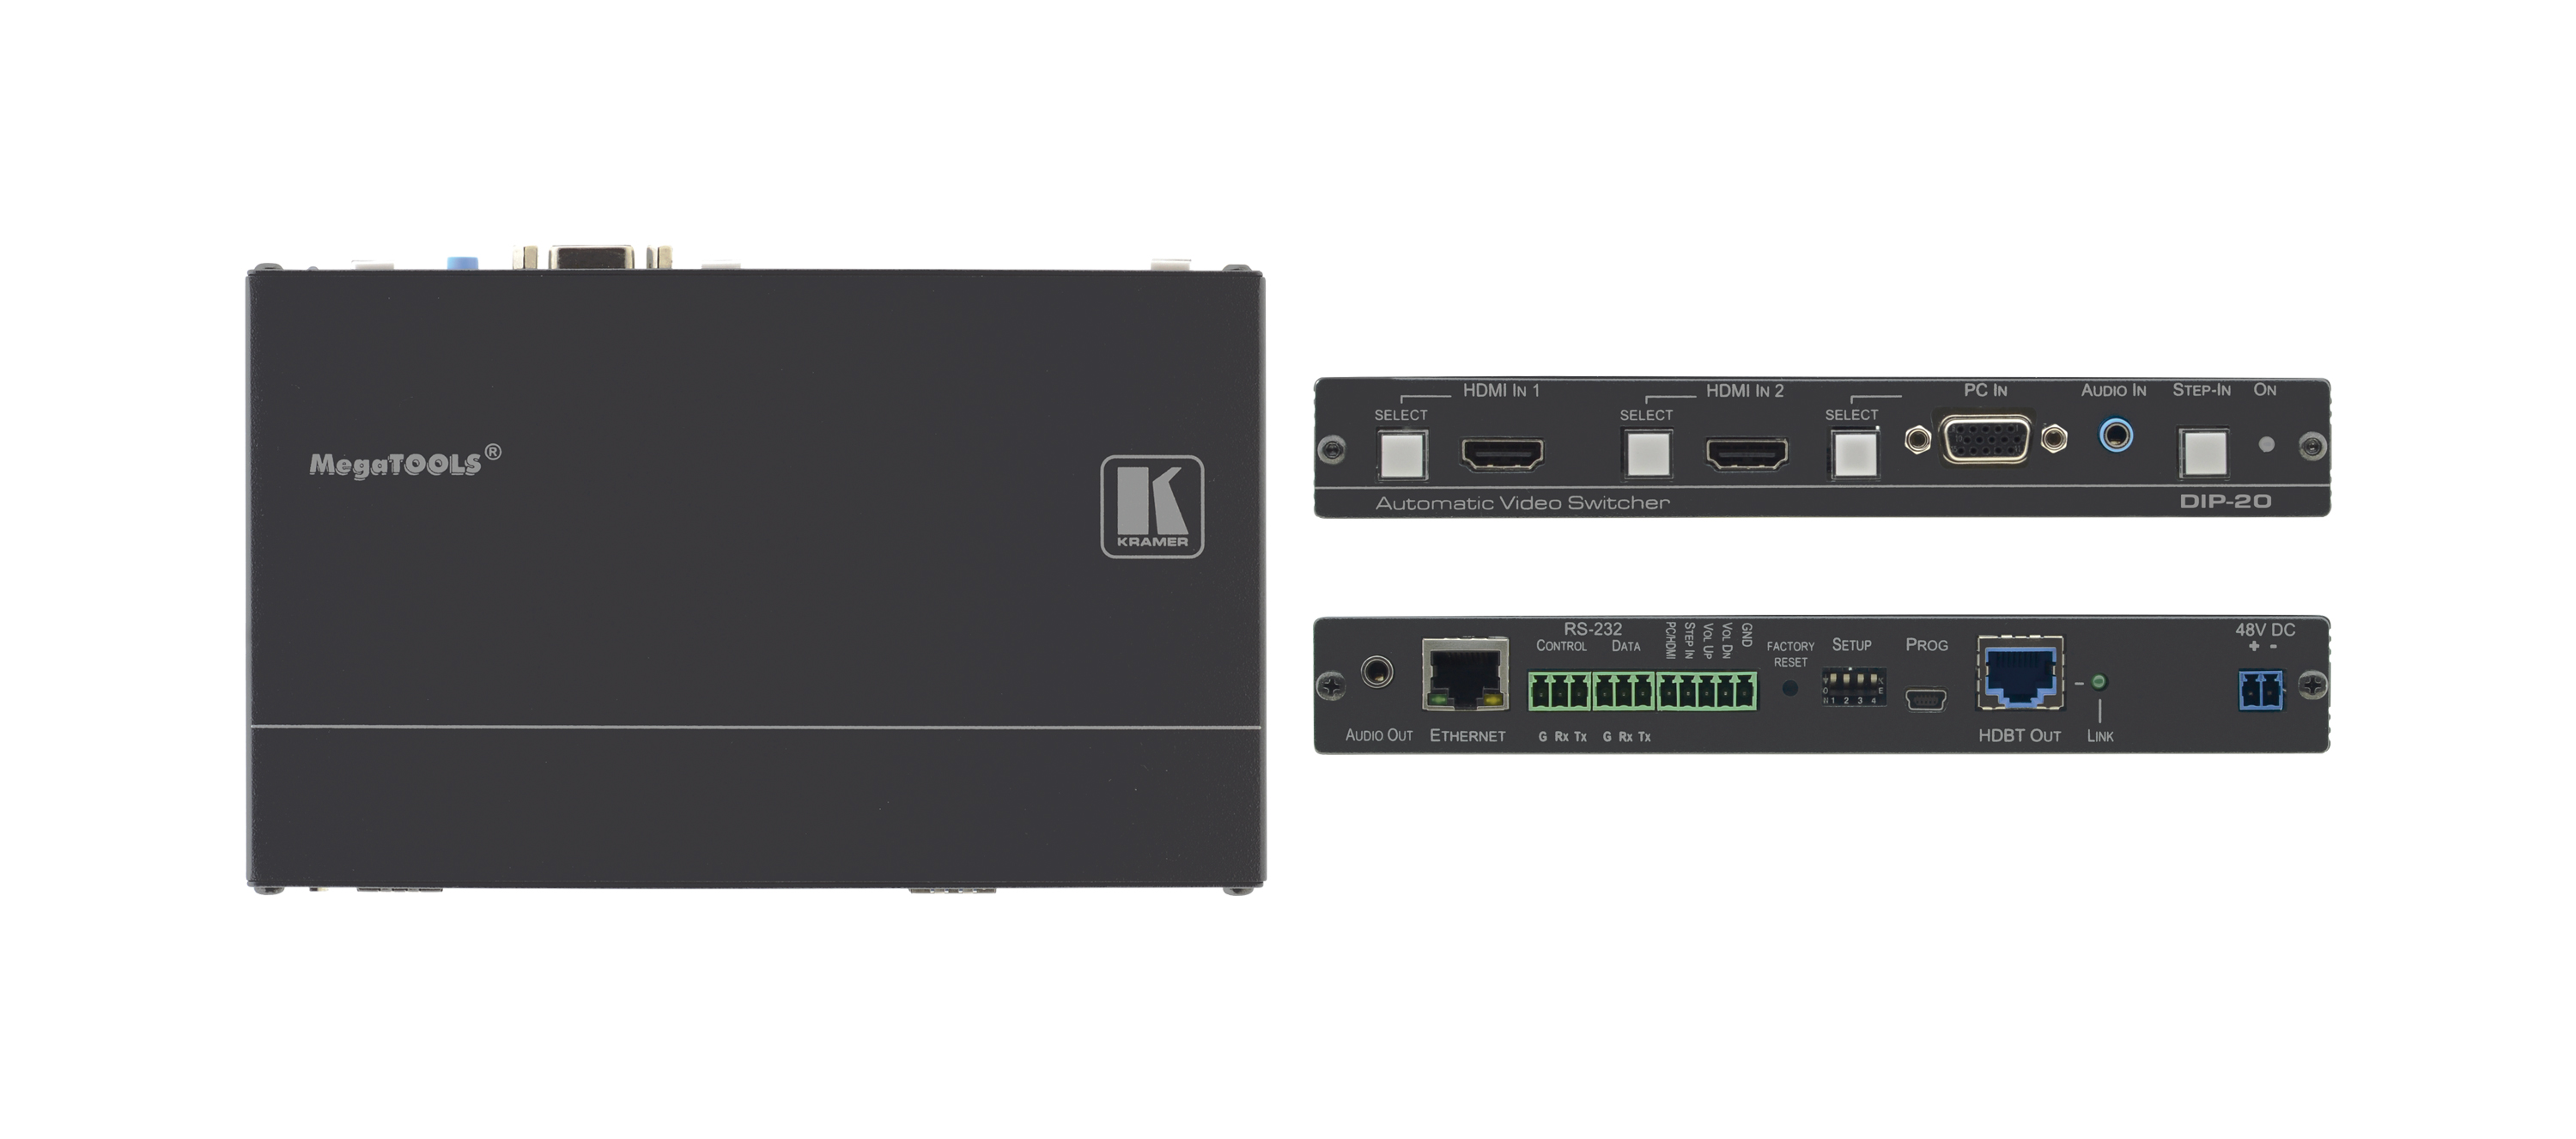 Передатчик Kramer DIP-20 HDMI / VGA, стерео аудио, двунаправленный RS-232, IR и Ethernet по витой паре HDBaseT с кнопкой управления Step-In